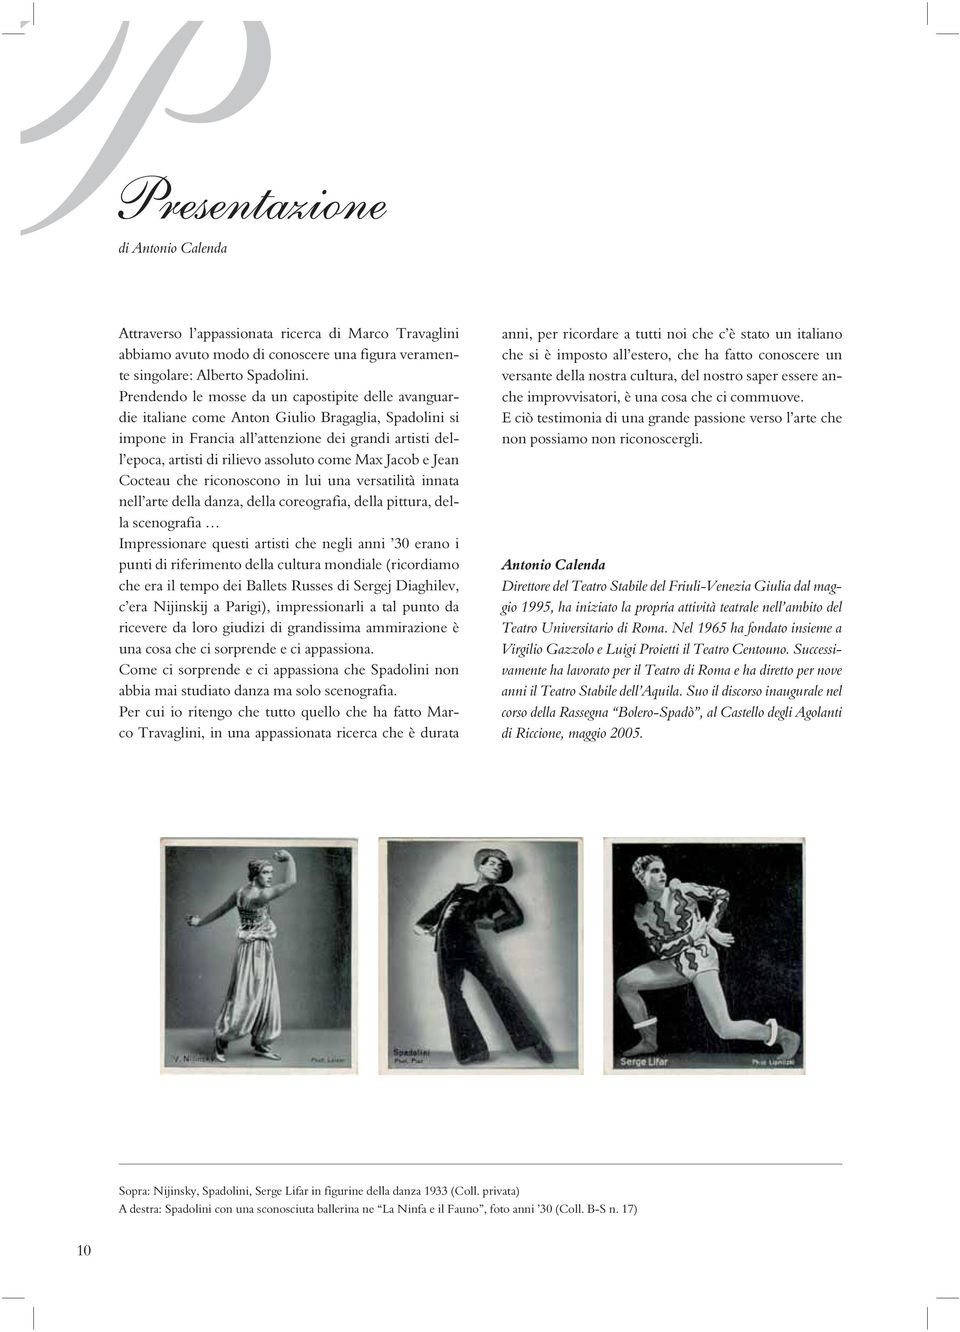 come Max Jacob e Jean Cocteau che riconoscono in lui una versatilità innata nell arte della danza, della coreografia, della pittura, della scenografia Impressionare questi artisti che negli anni 30